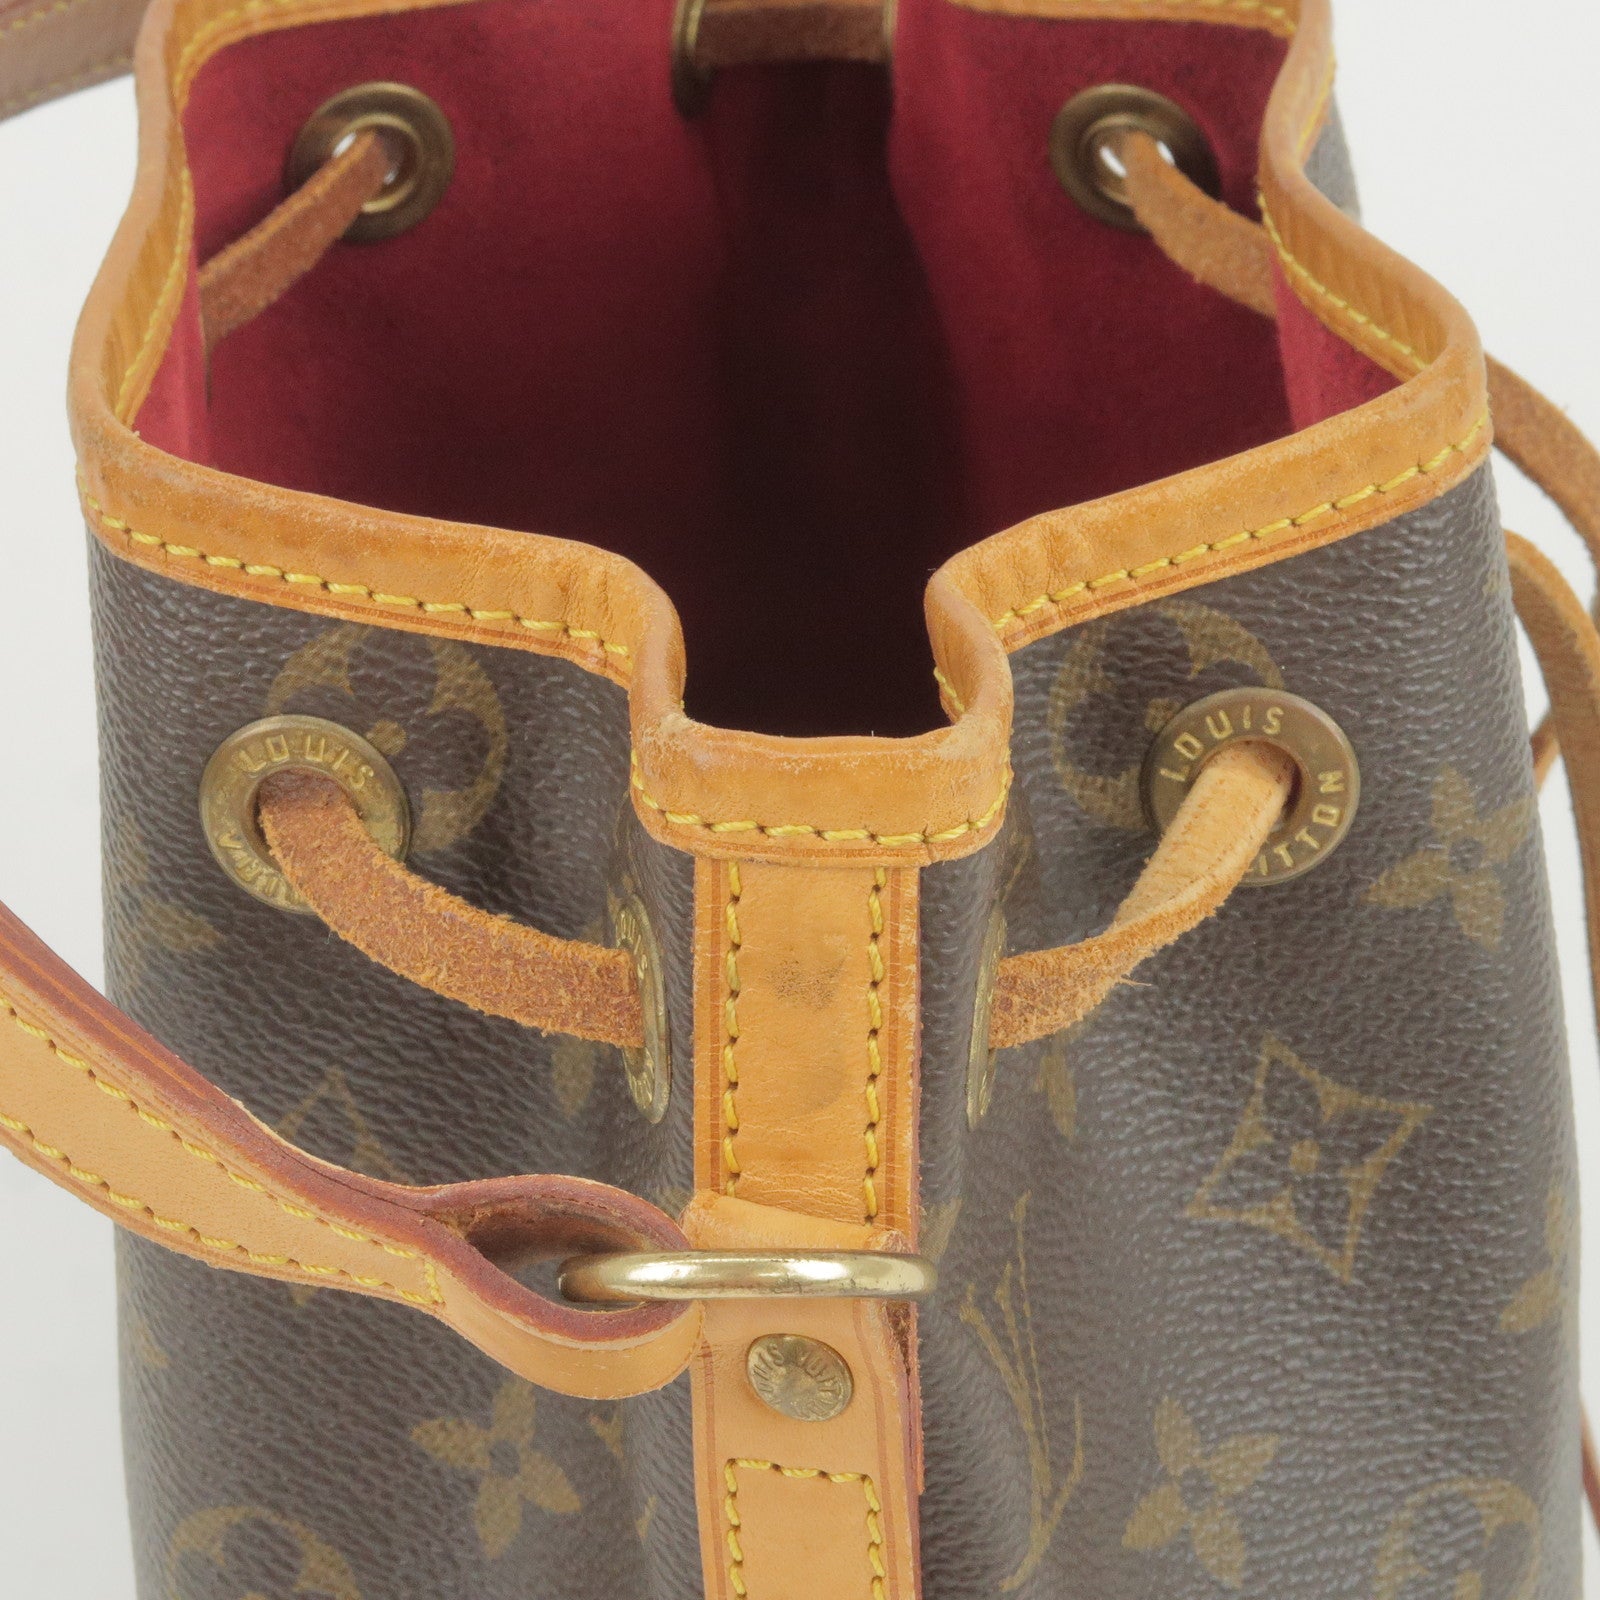 Louis Vuitton 2000s Monogram Speedy Handbag Mini